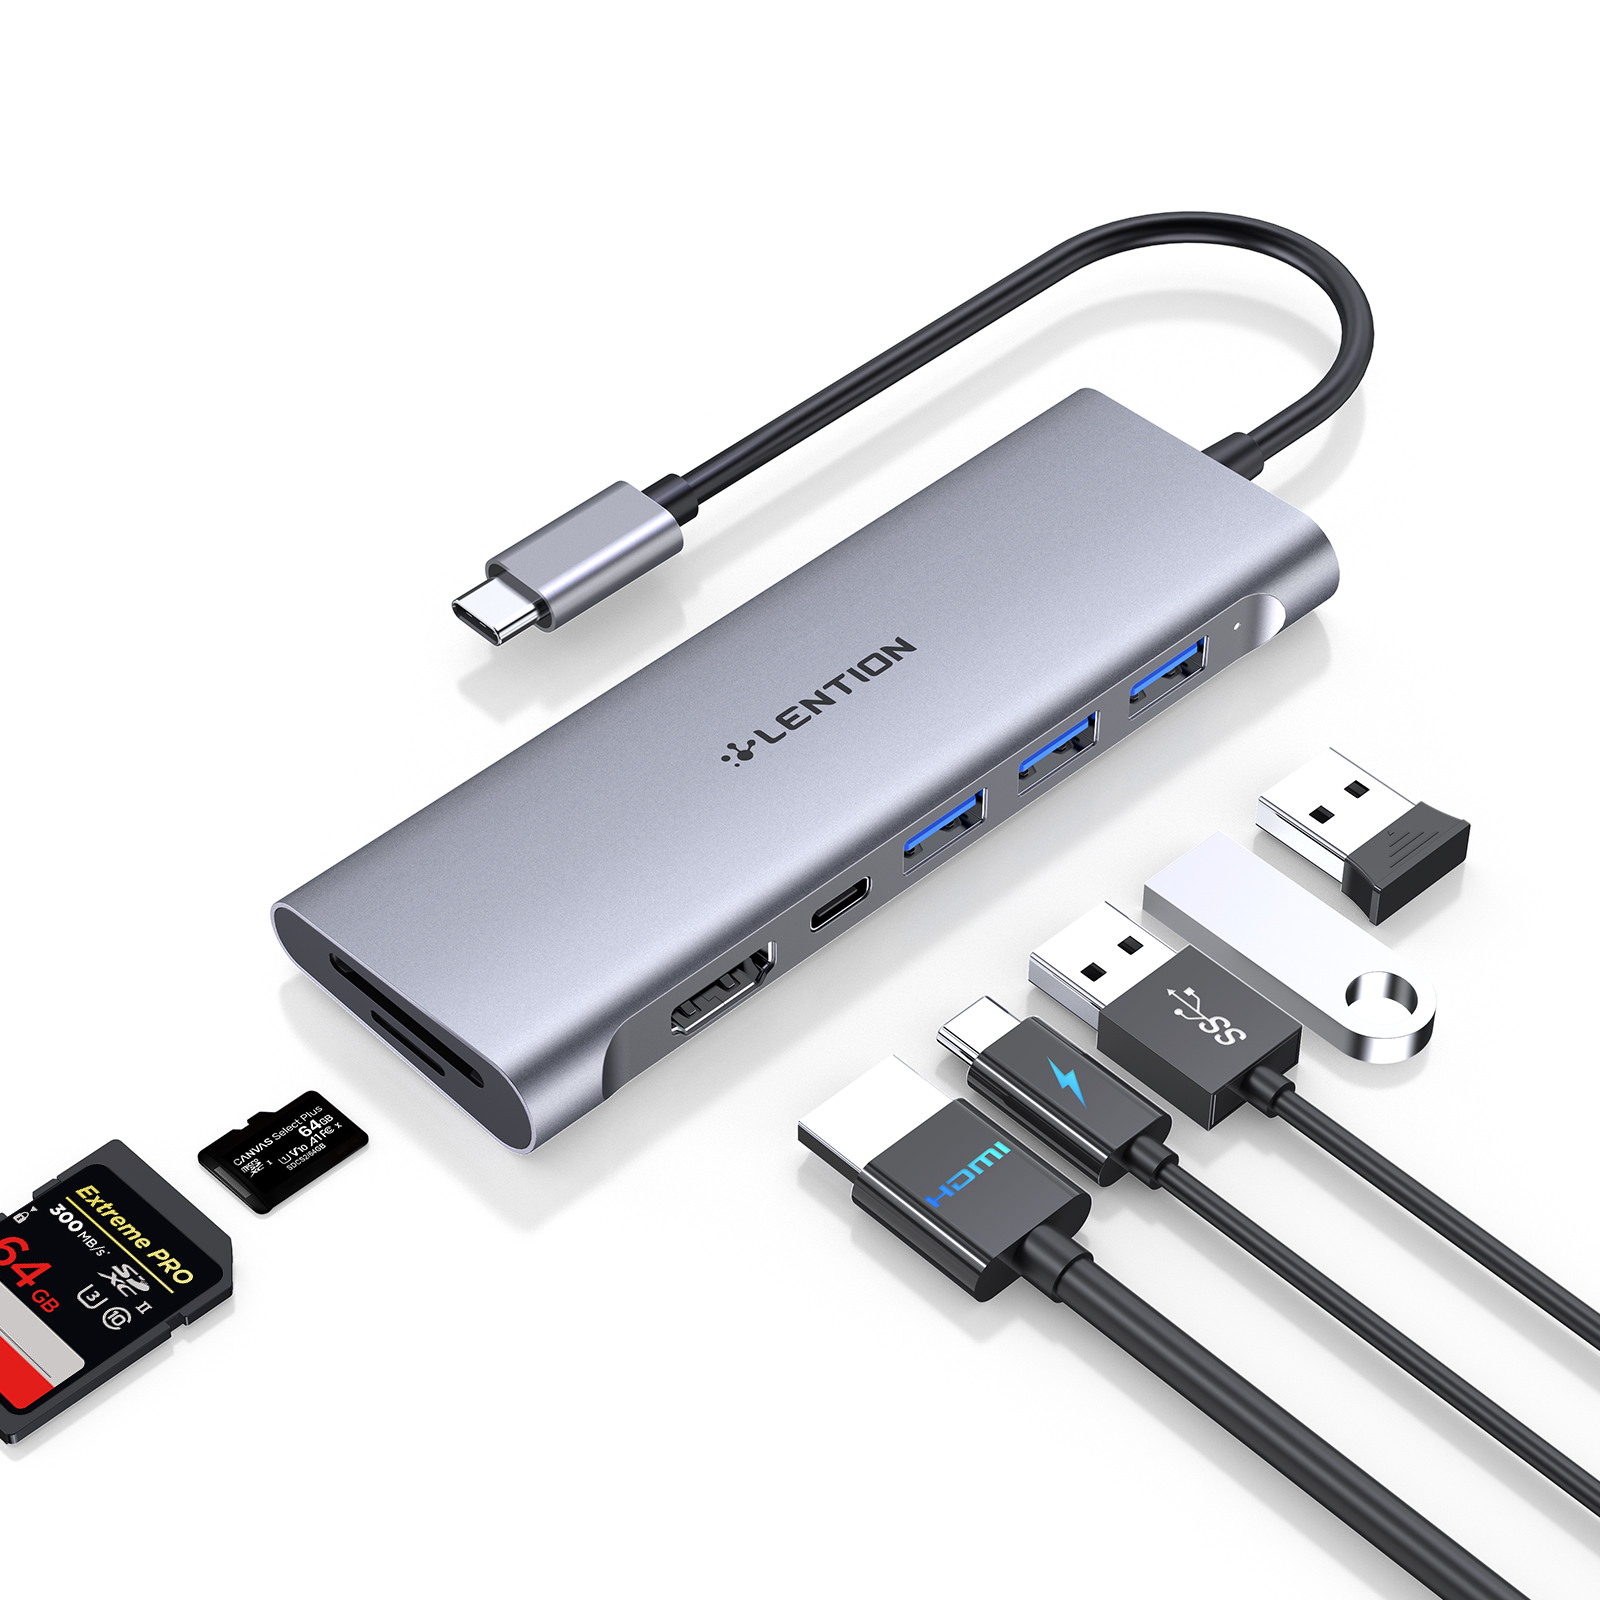 4K HDMI、3 USB 3.0、SD/Micro SDカードリーダー、100W PD互換2023-2016 MacBook Pro、New Mac Air、その他のタイプCデバイス、安定したドライバーアダプターを備えたLENTION USB Cマルチポートハブ